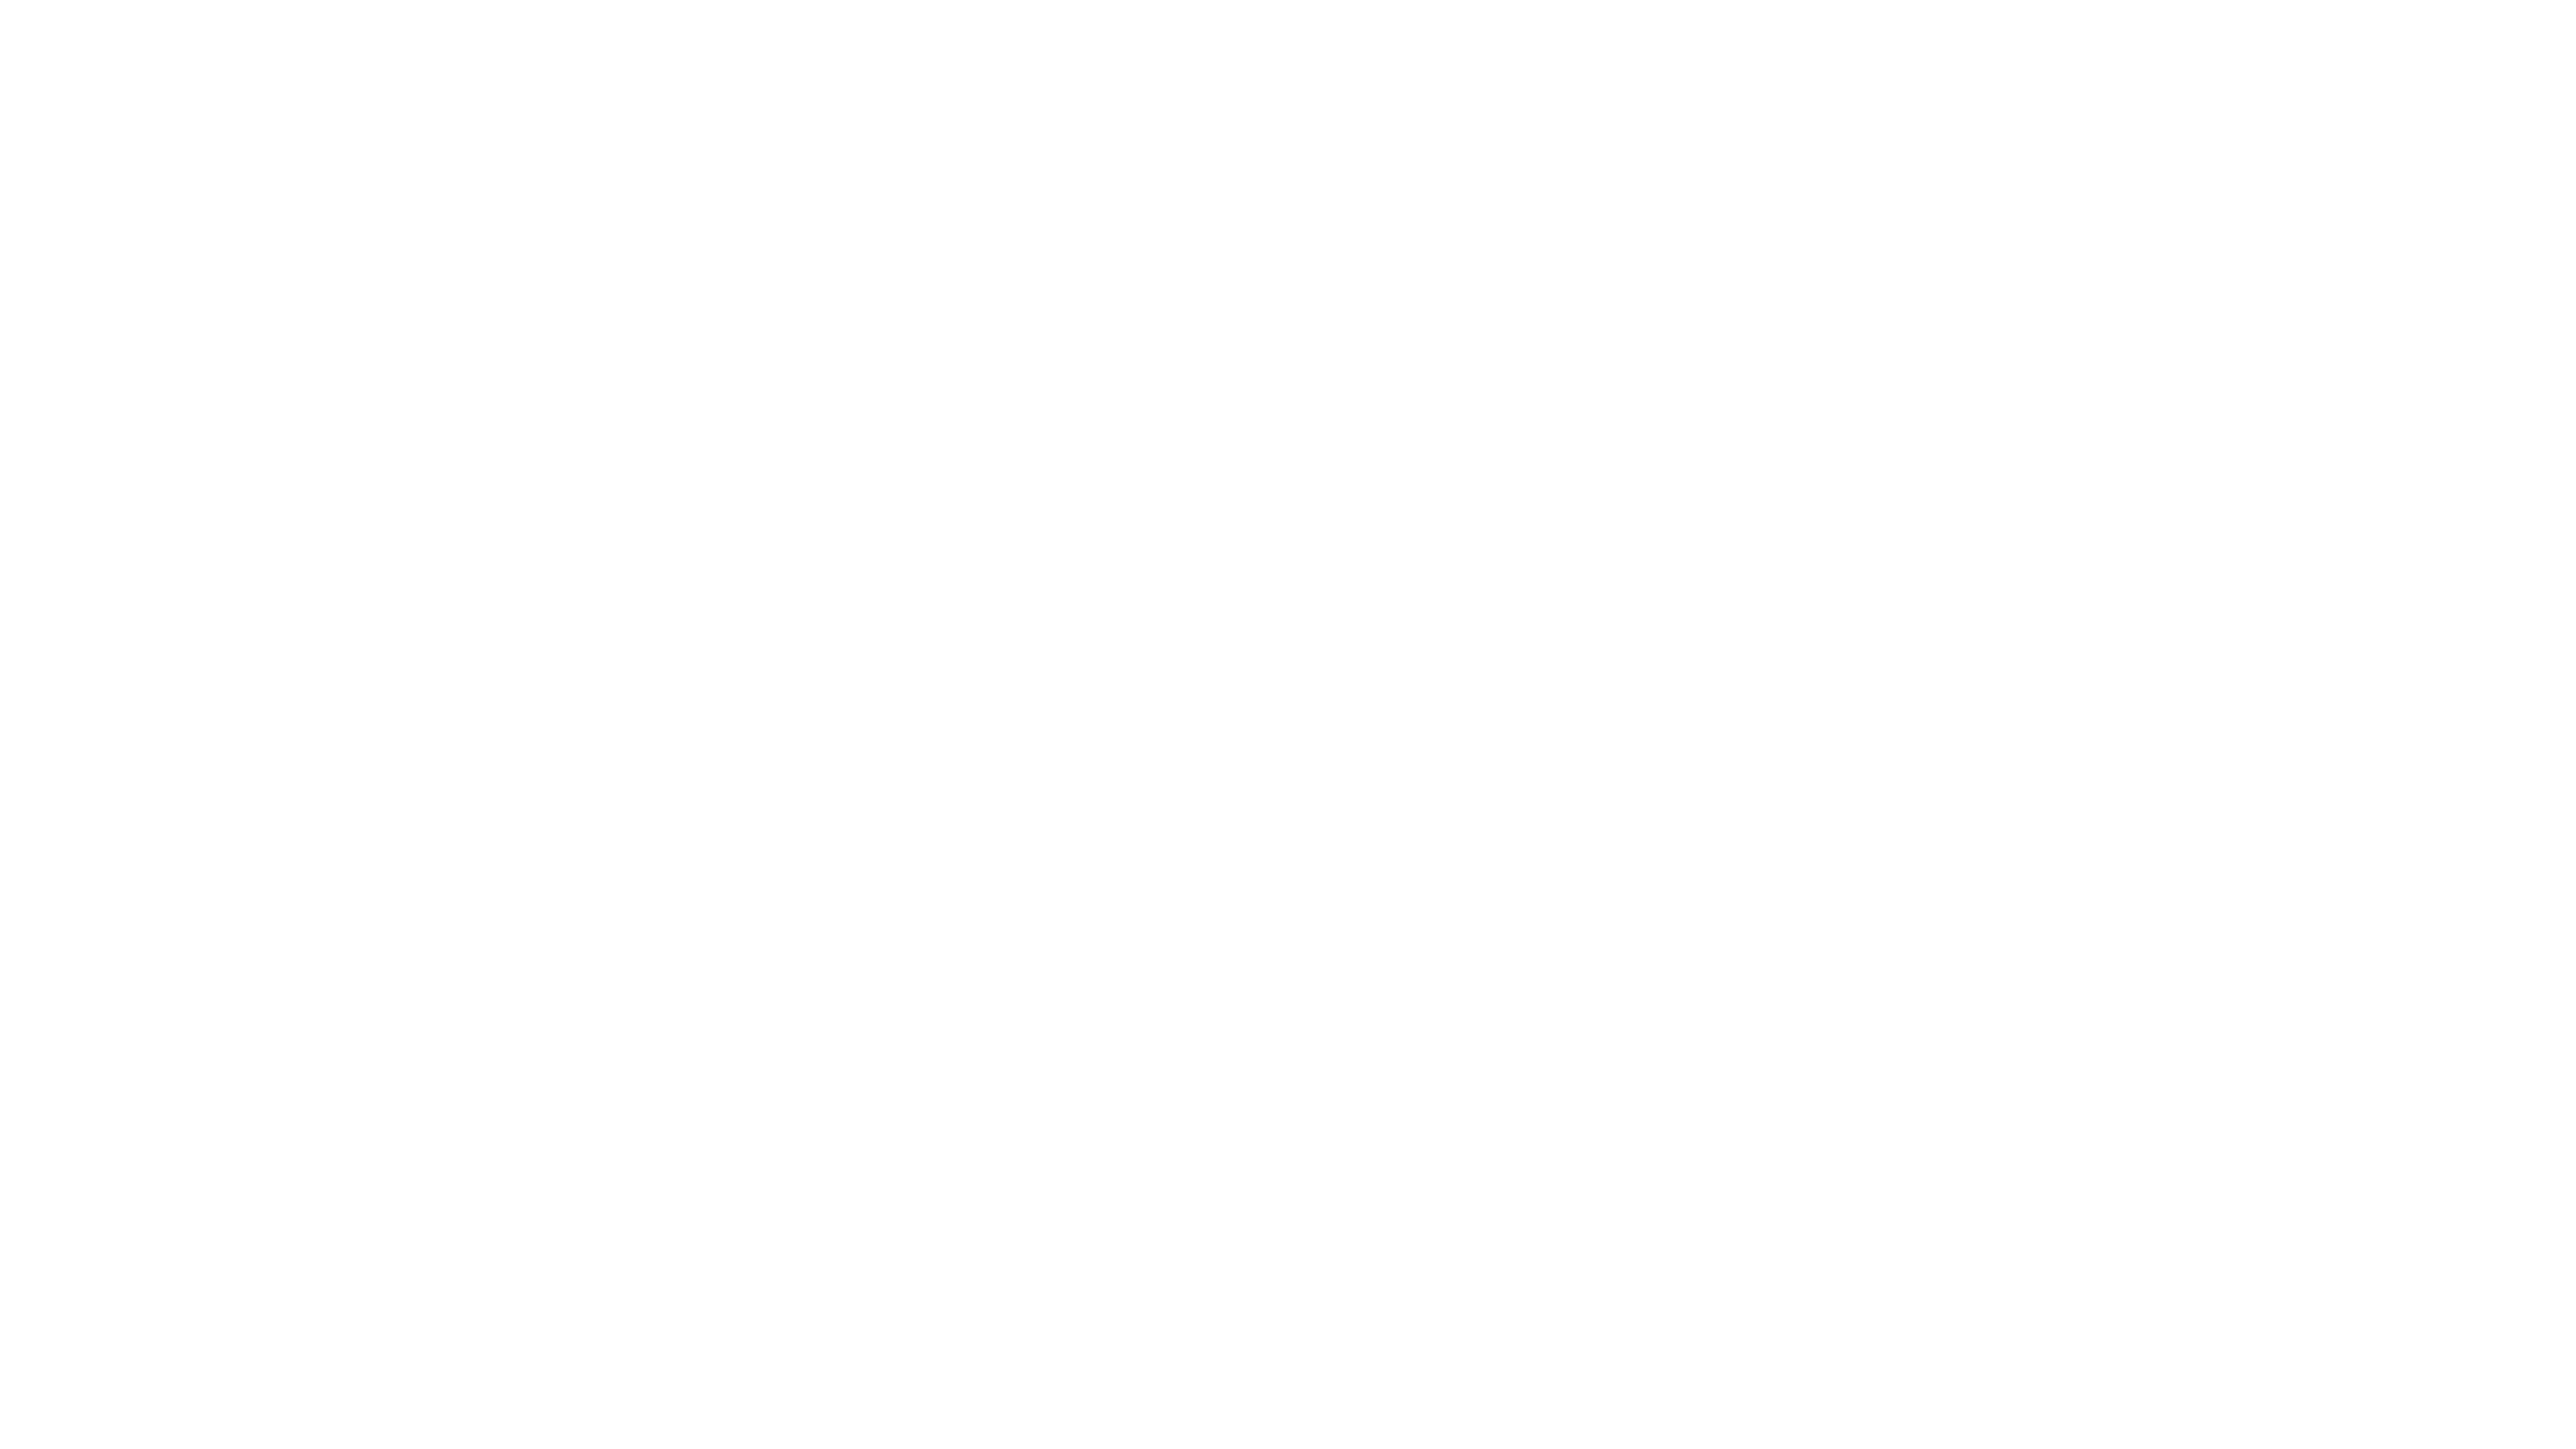 Teritoria - Aux sources de l'hospitalité